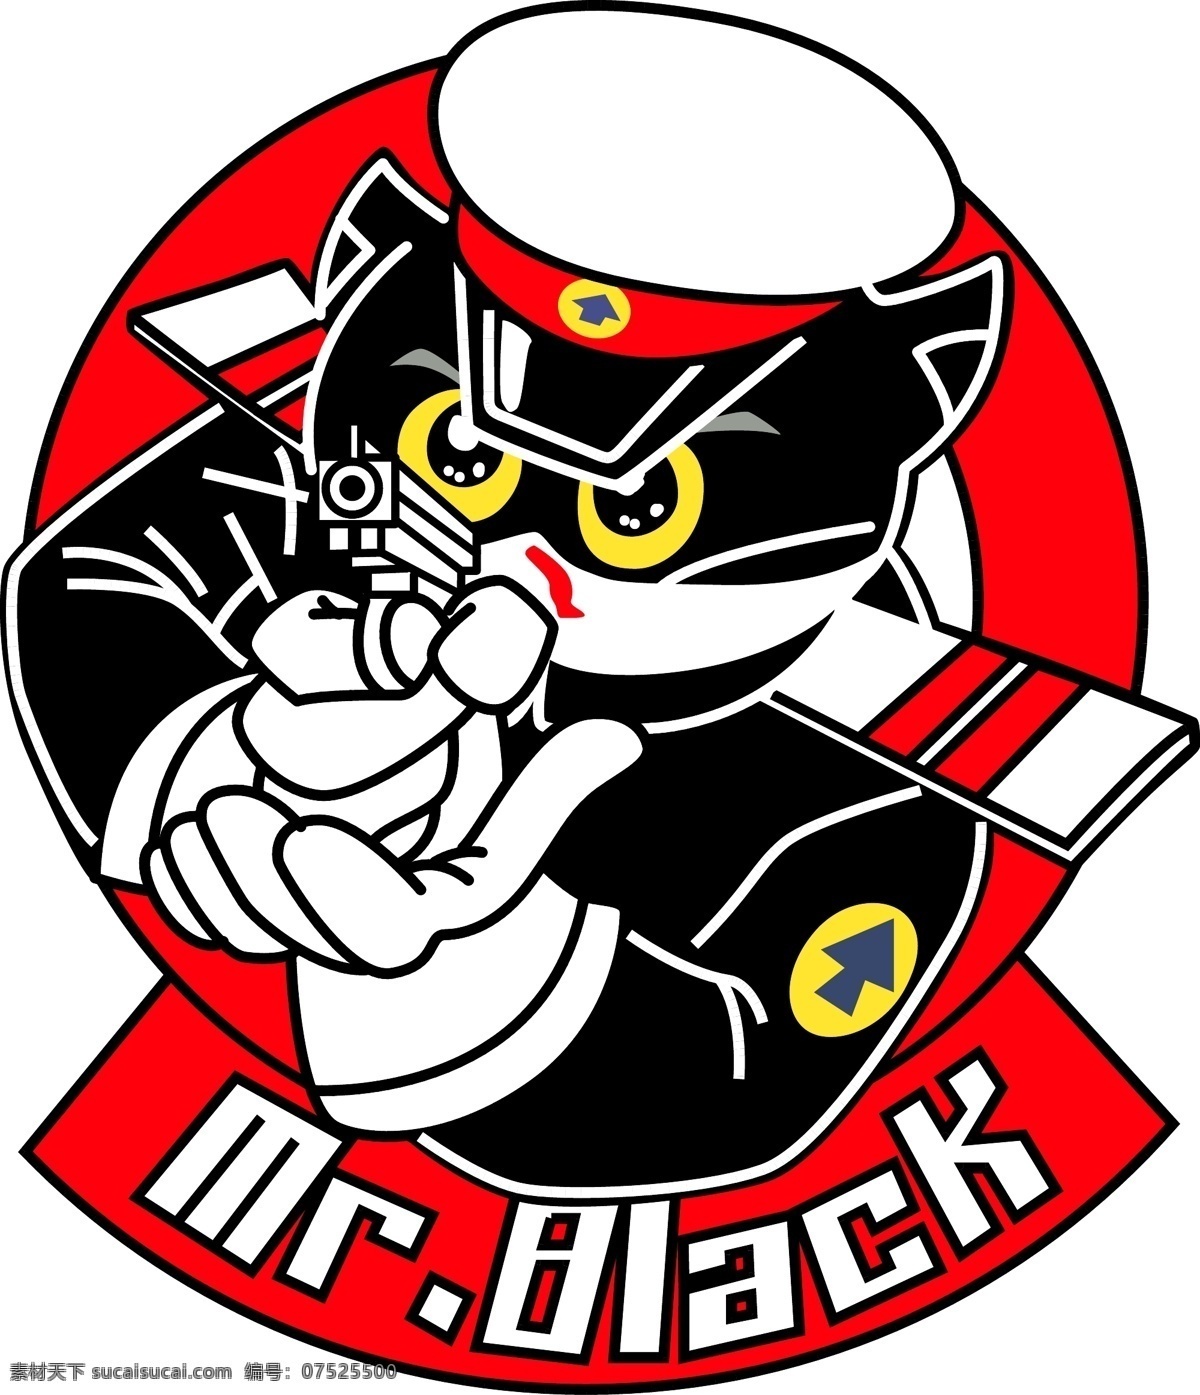 黑猫警长 典型 红底 白字 矢量 卡通设计